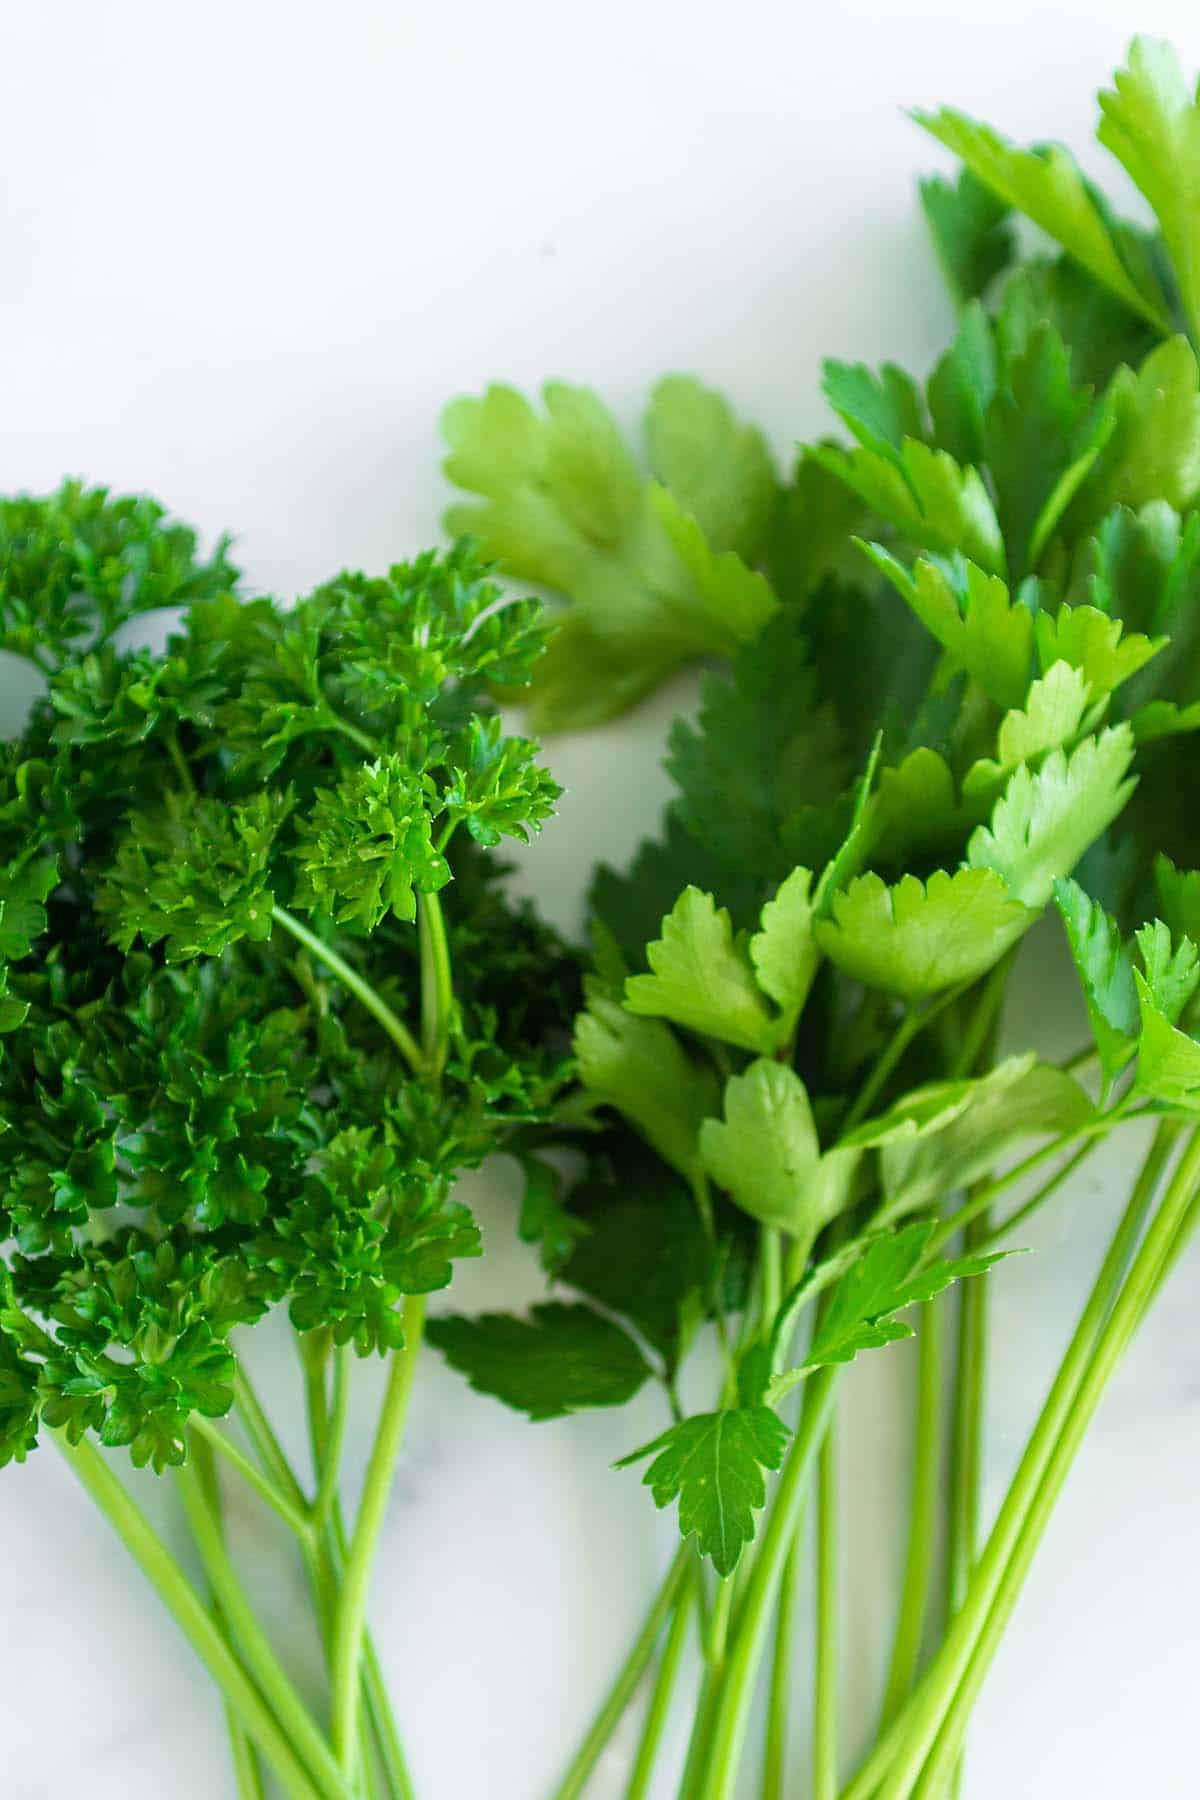 A bundle of flat leaf Italian parsley and curly leaf parsley.